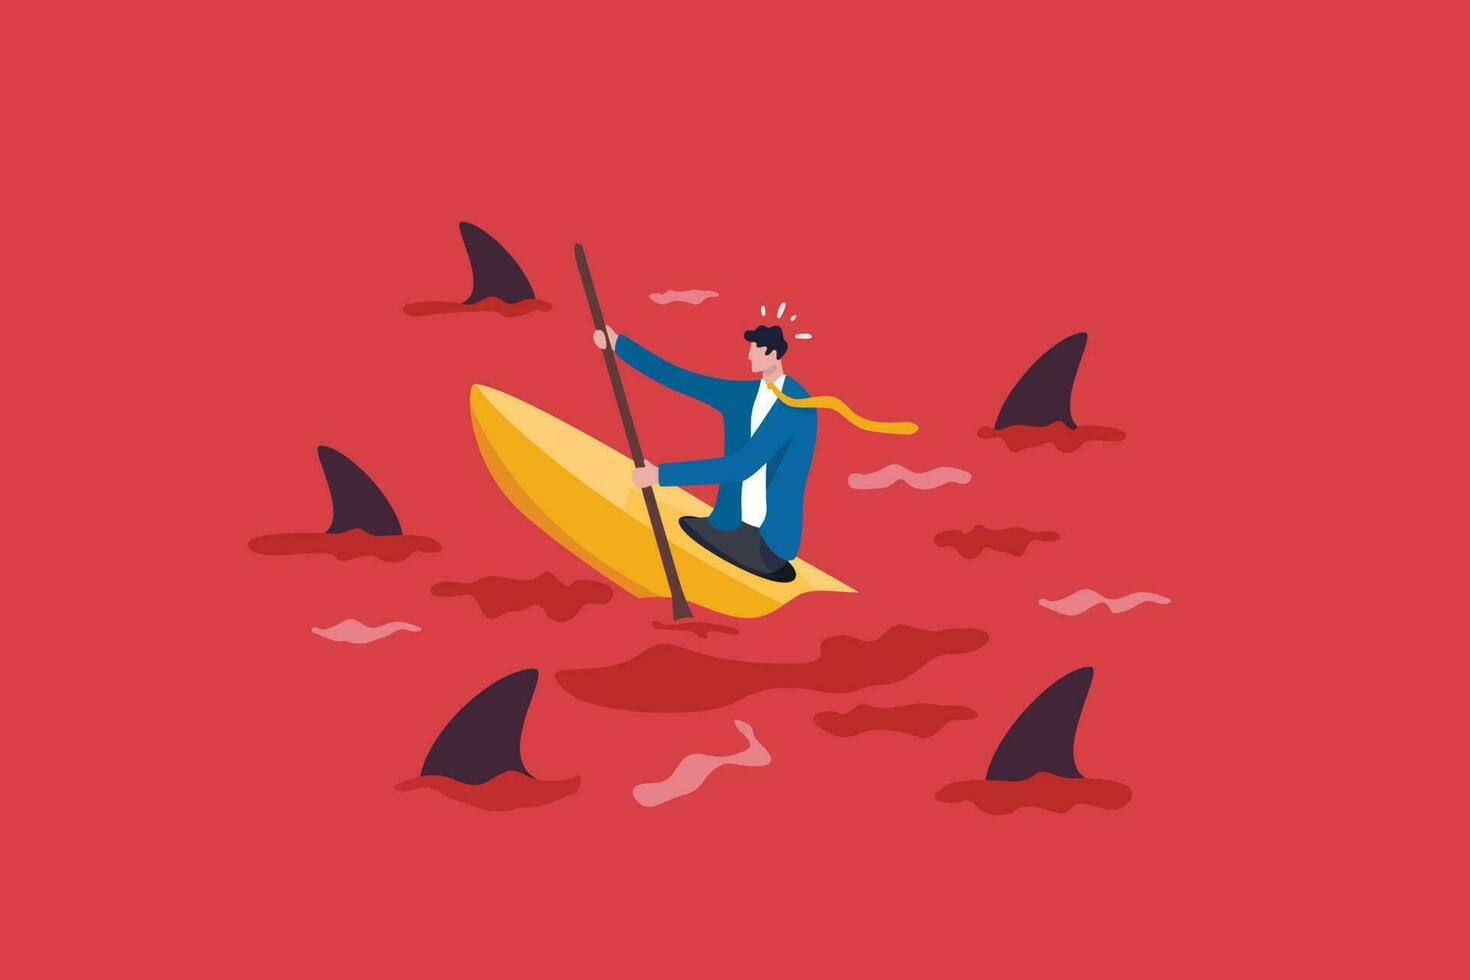 rosso oceano mercato, alto concorrenza industria con pure molti concorrenti, intenso mercato con sfida o difficile per successo concetto, uomo d'affari nel kayak provando per sopravvivere nel rosso oceano con squali. vettore